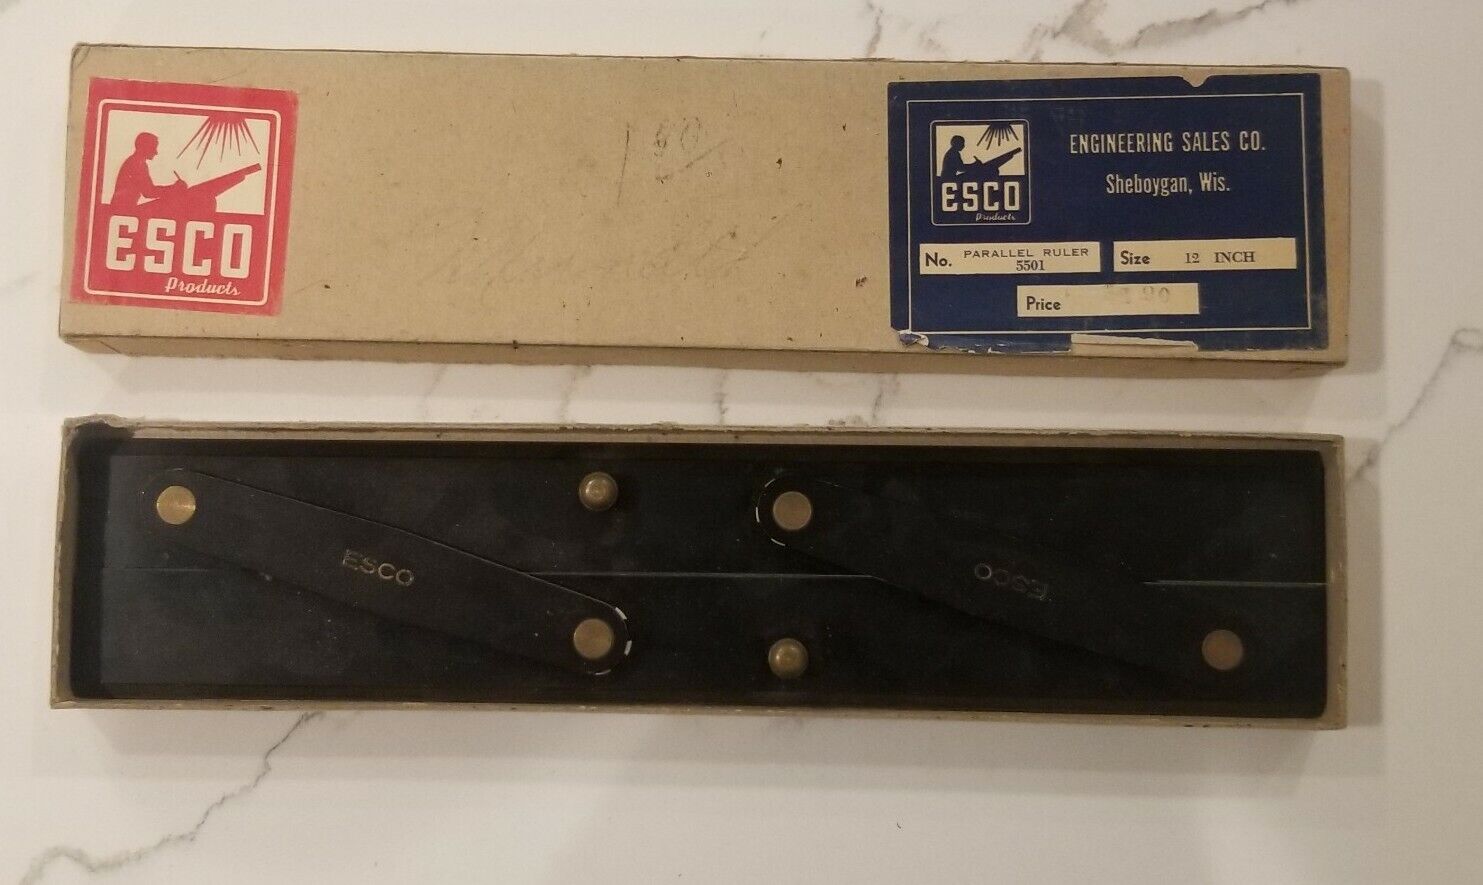 Vintage Esco Parallel Ruler Navigation 12" Original Box No. 5501 Engineering